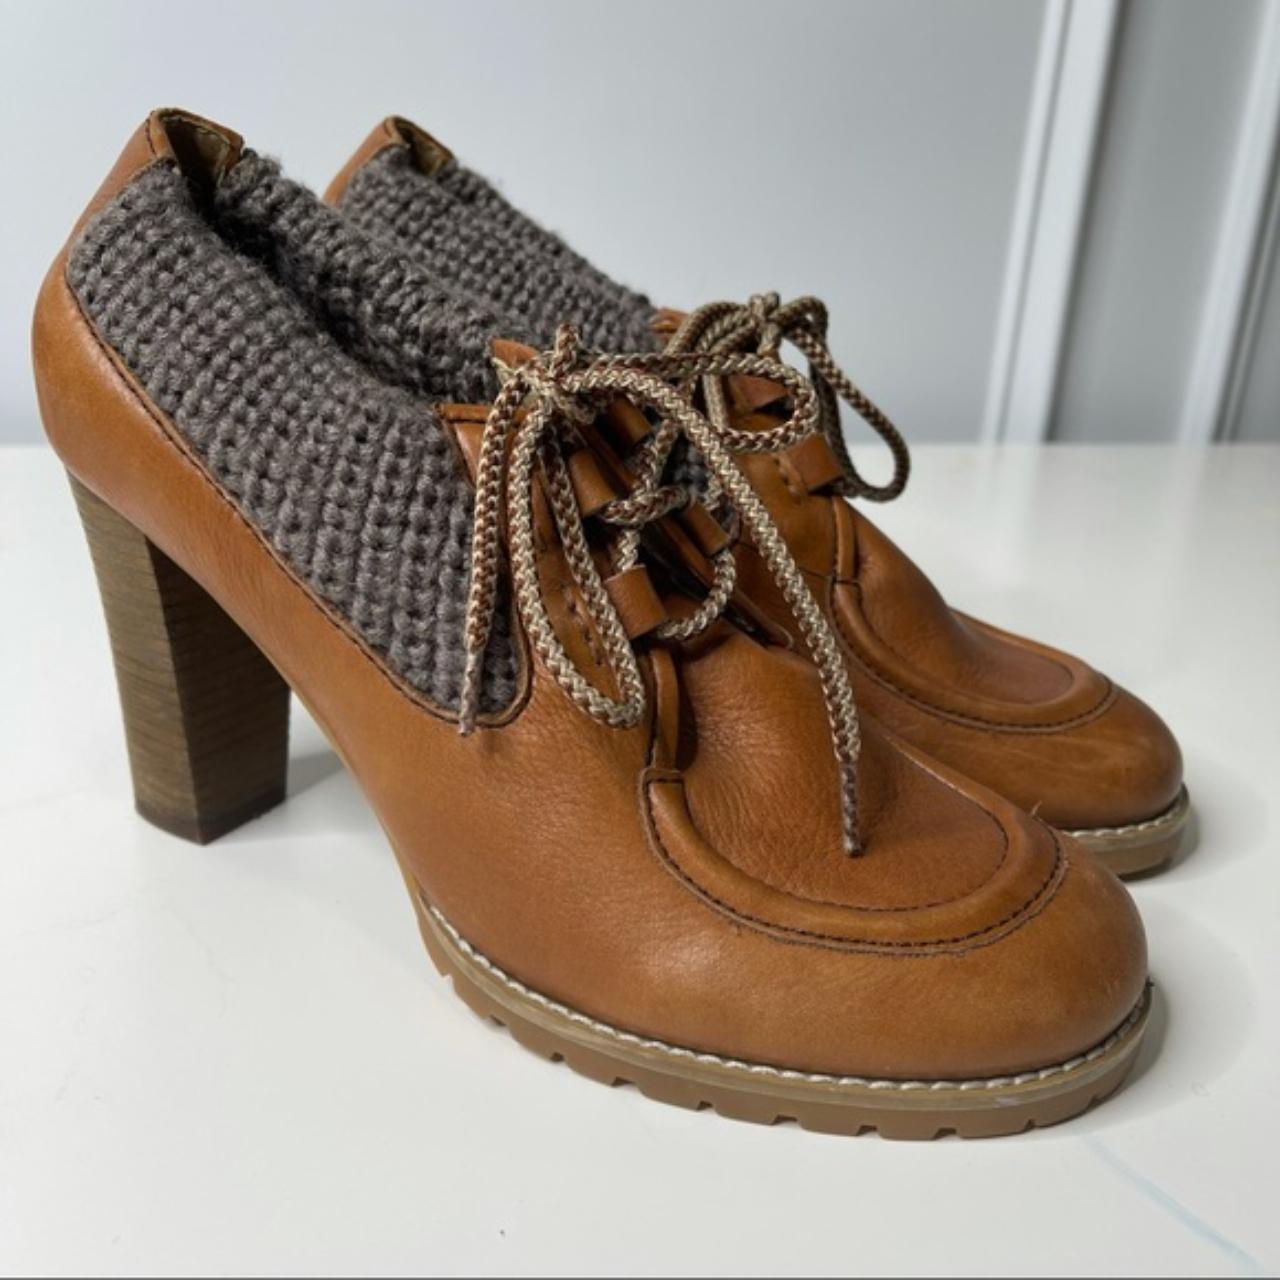 Men's Brown Boots